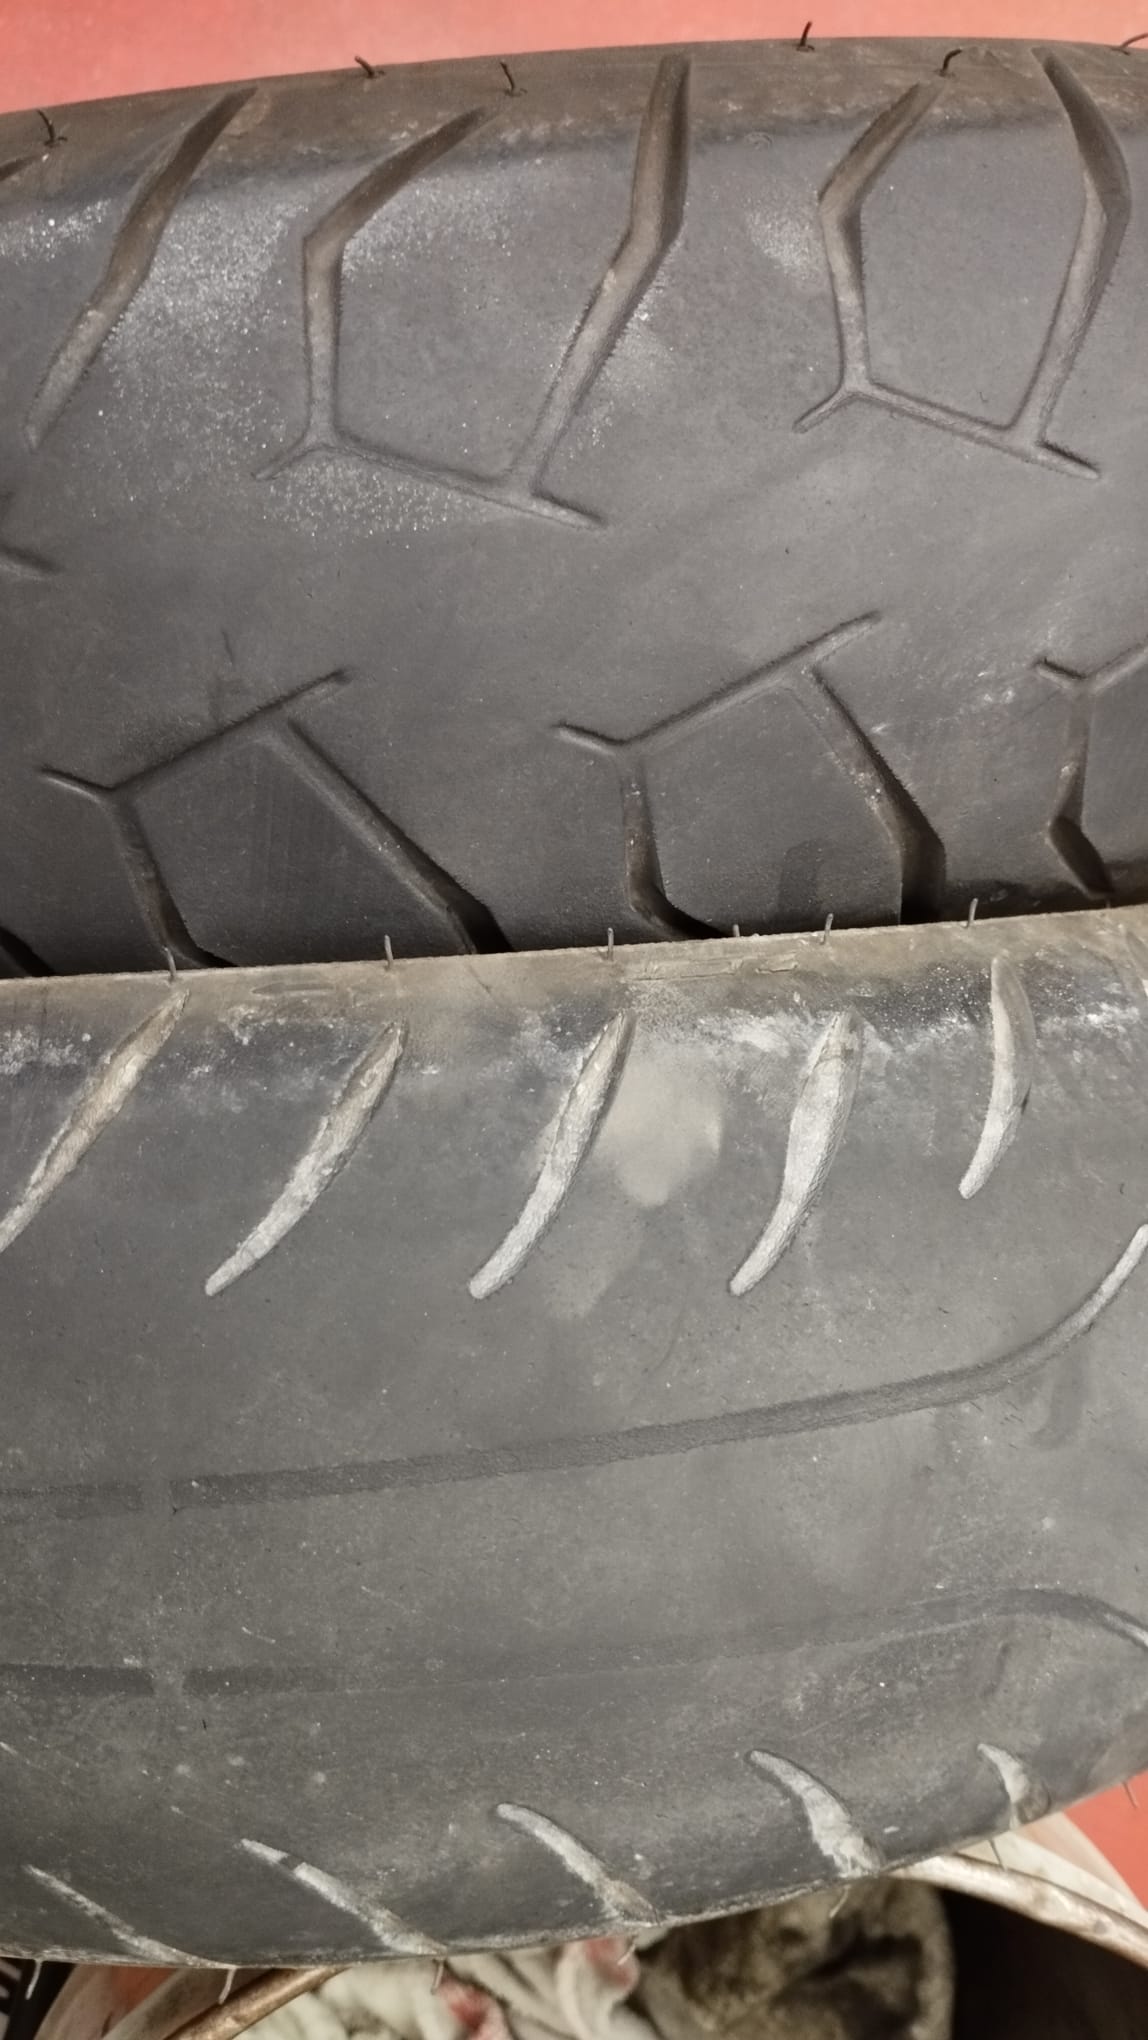 worn tires